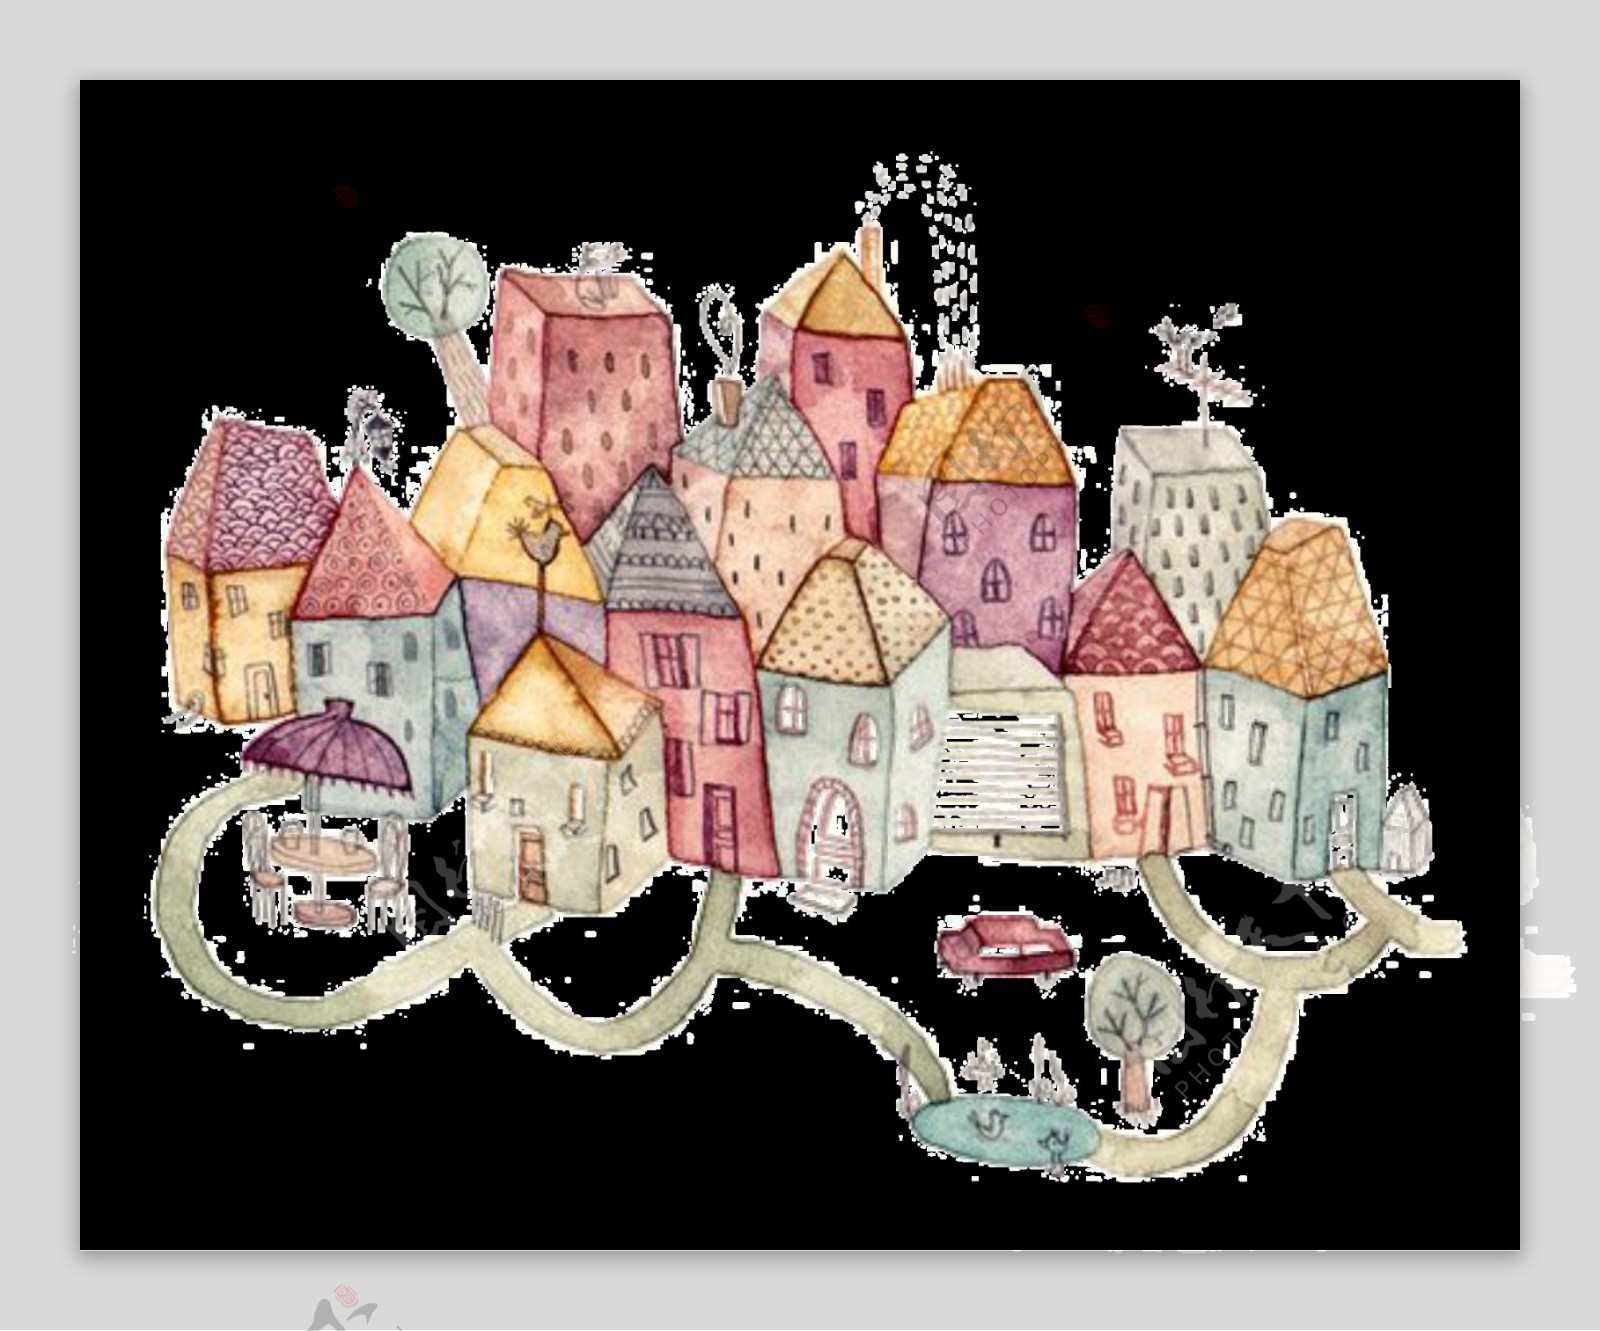 彩绘童话城堡图案元素